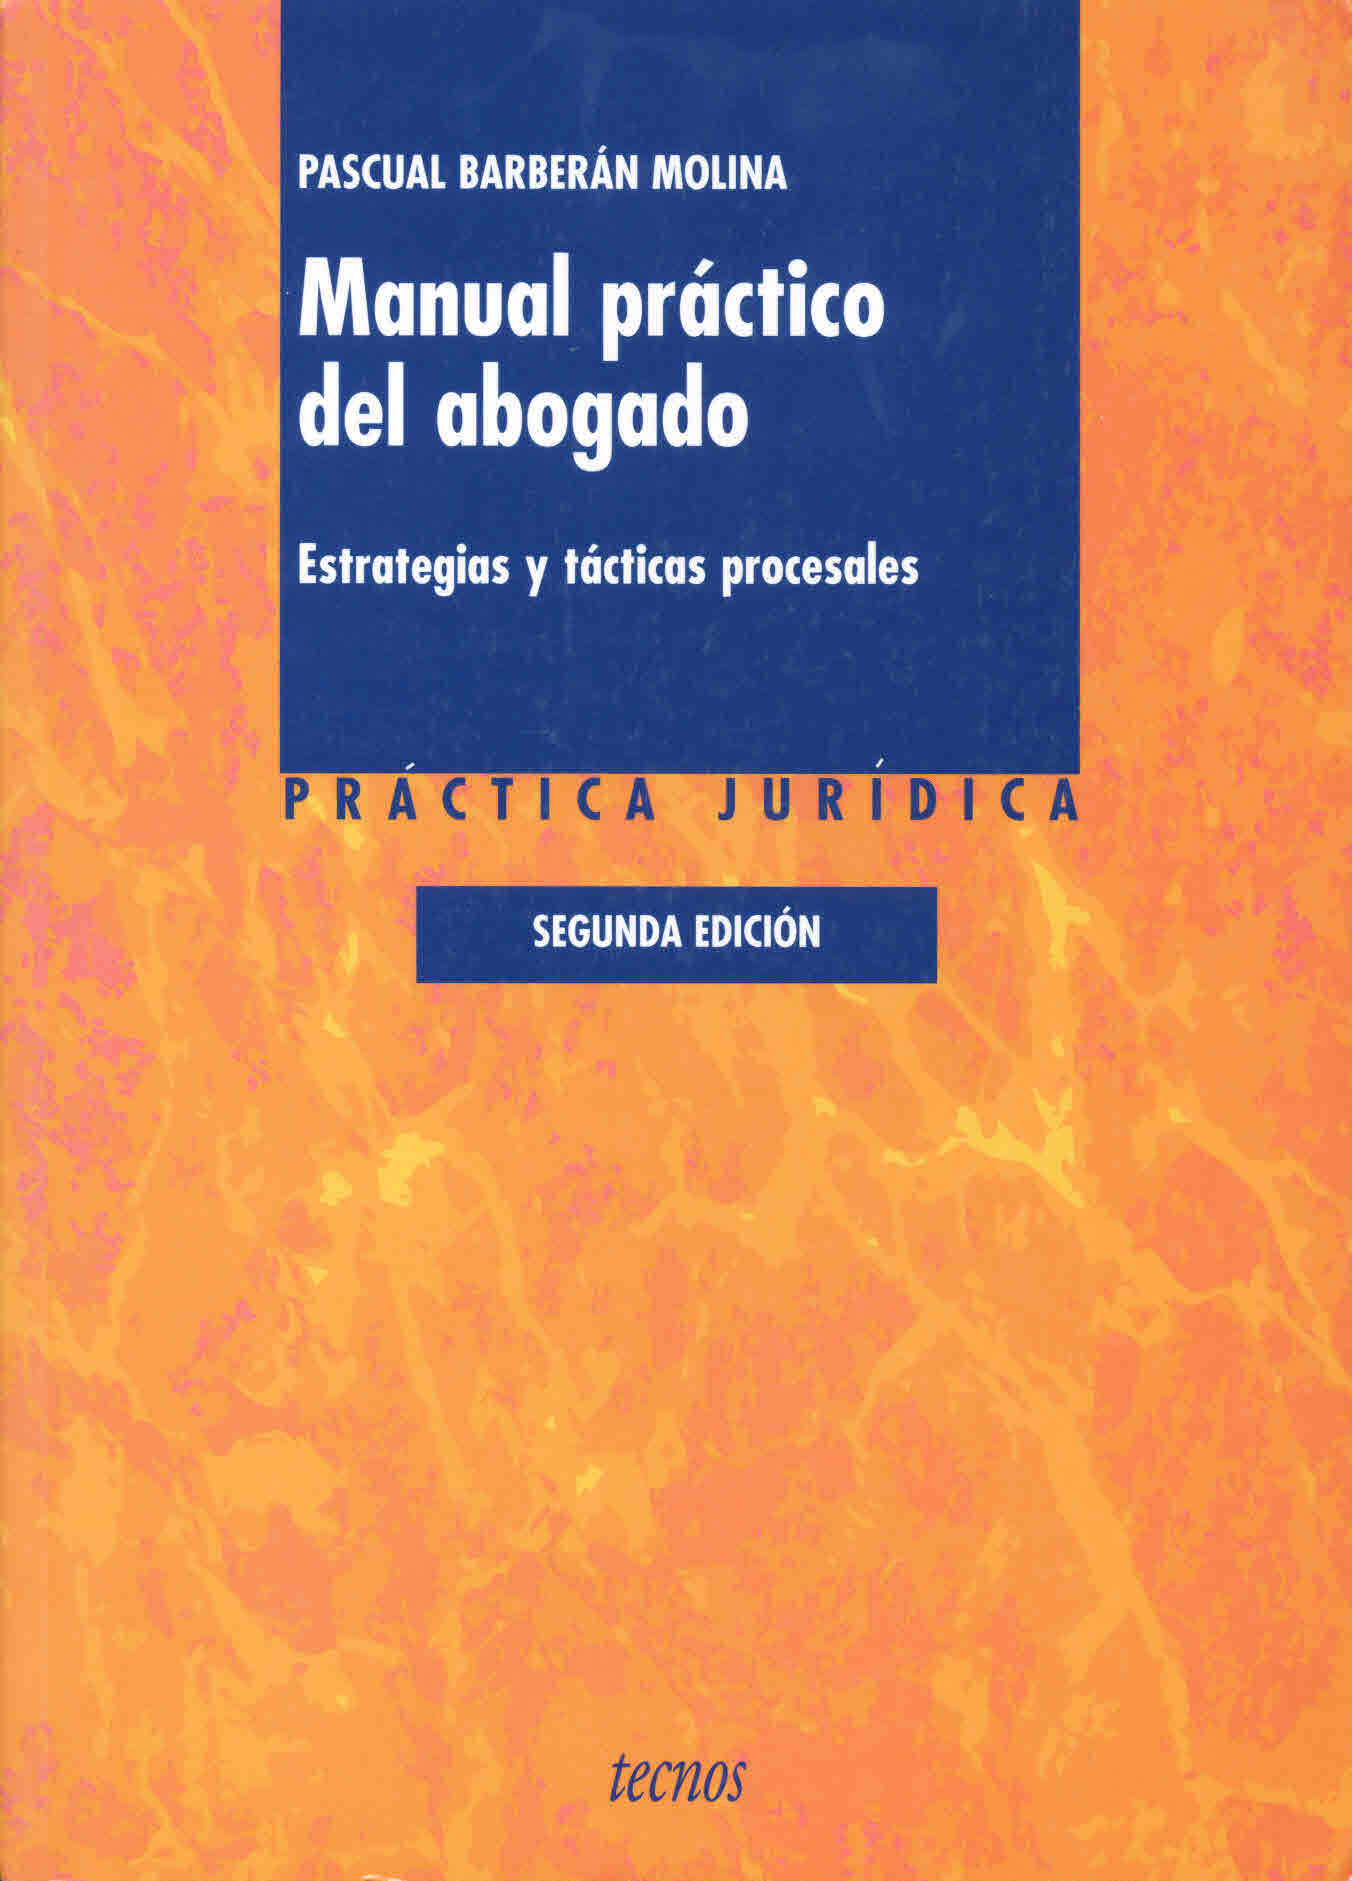 Manual práctico del abogado. Estrategias y tácticas procesales